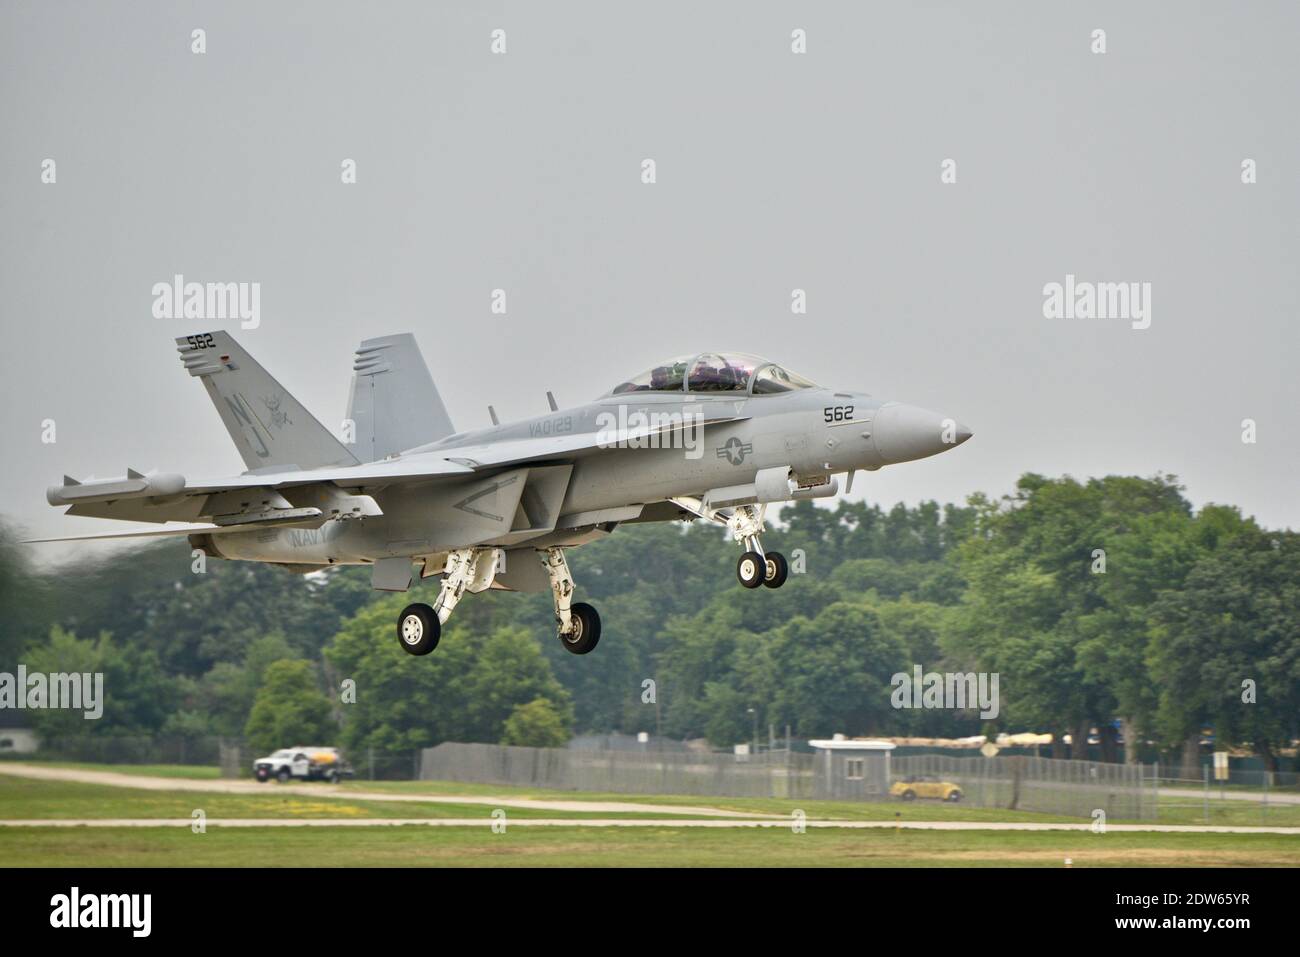 Démonstration de vol avec capacités létales du F-18 Super Hornet à EAA AirVenture, Oshkosh, Wisconsin, États-Unis Banque D'Images